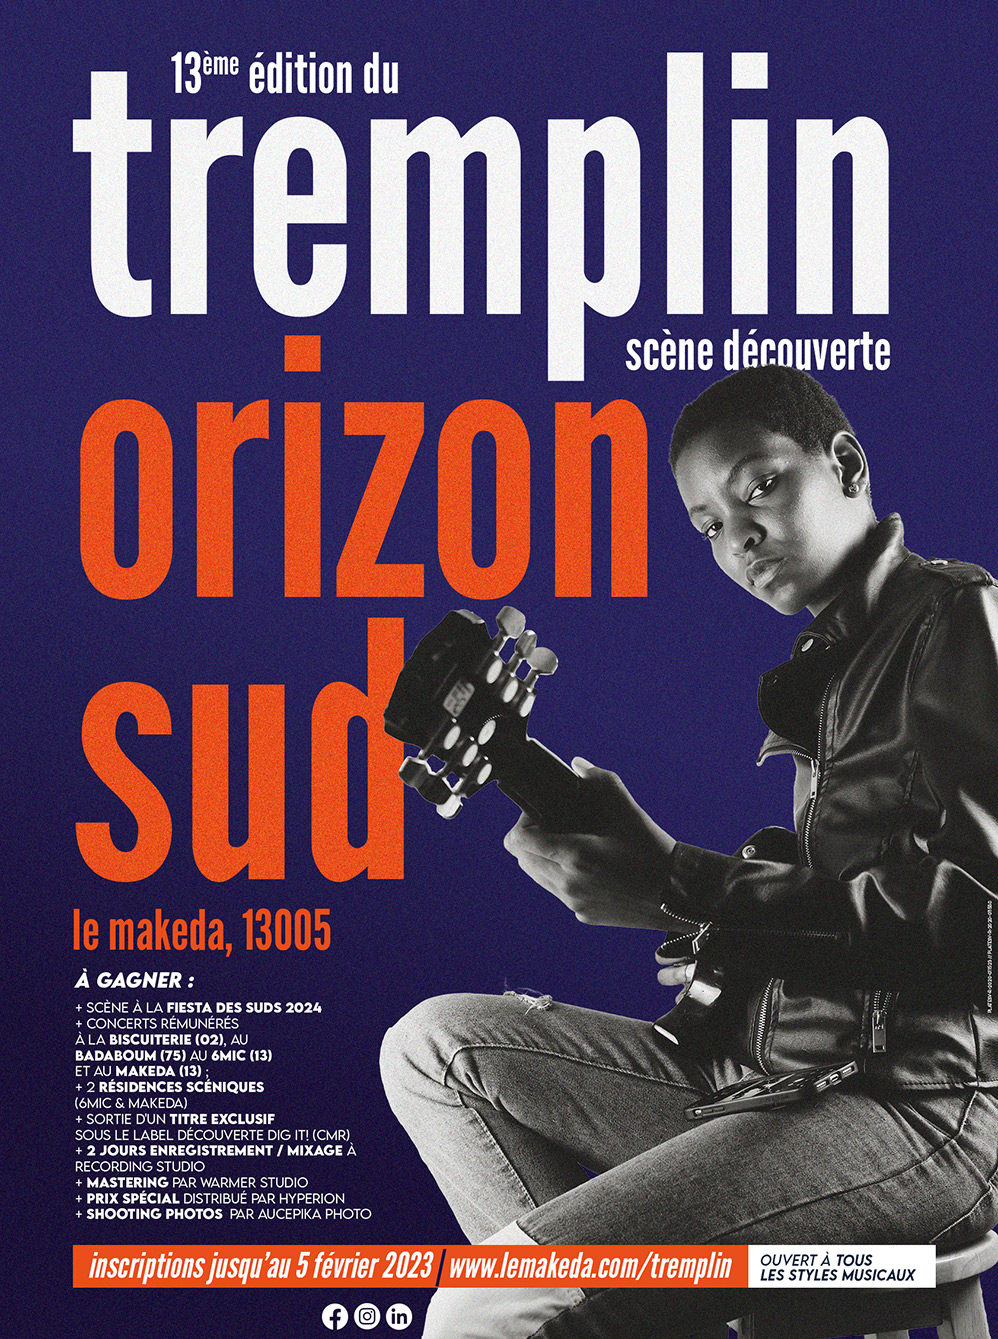 13ème édition du Tremplin scène découverte - Le Makeda - Marseille